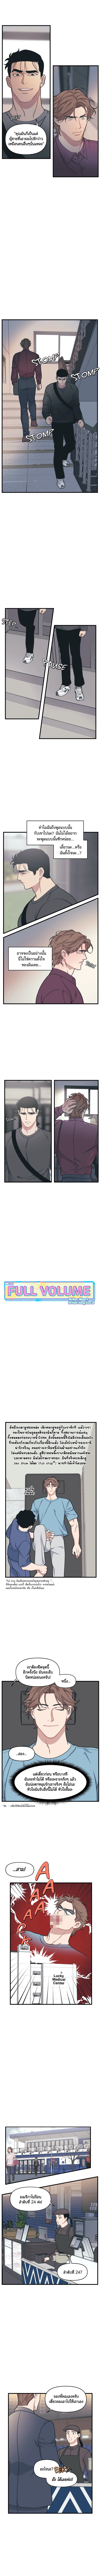 Full Volume 8 4